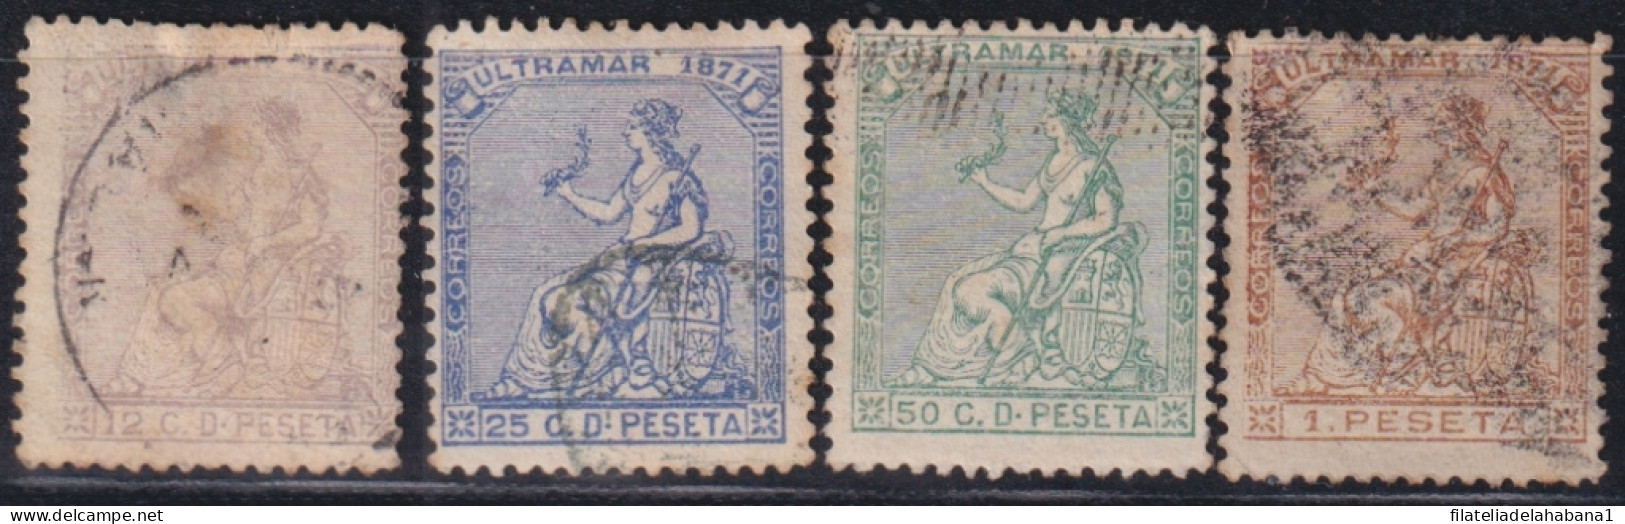 1871-136 CUBA ANTILLES SPAIN 1871 COMPLETE SET USED.  - Vorphilatelie